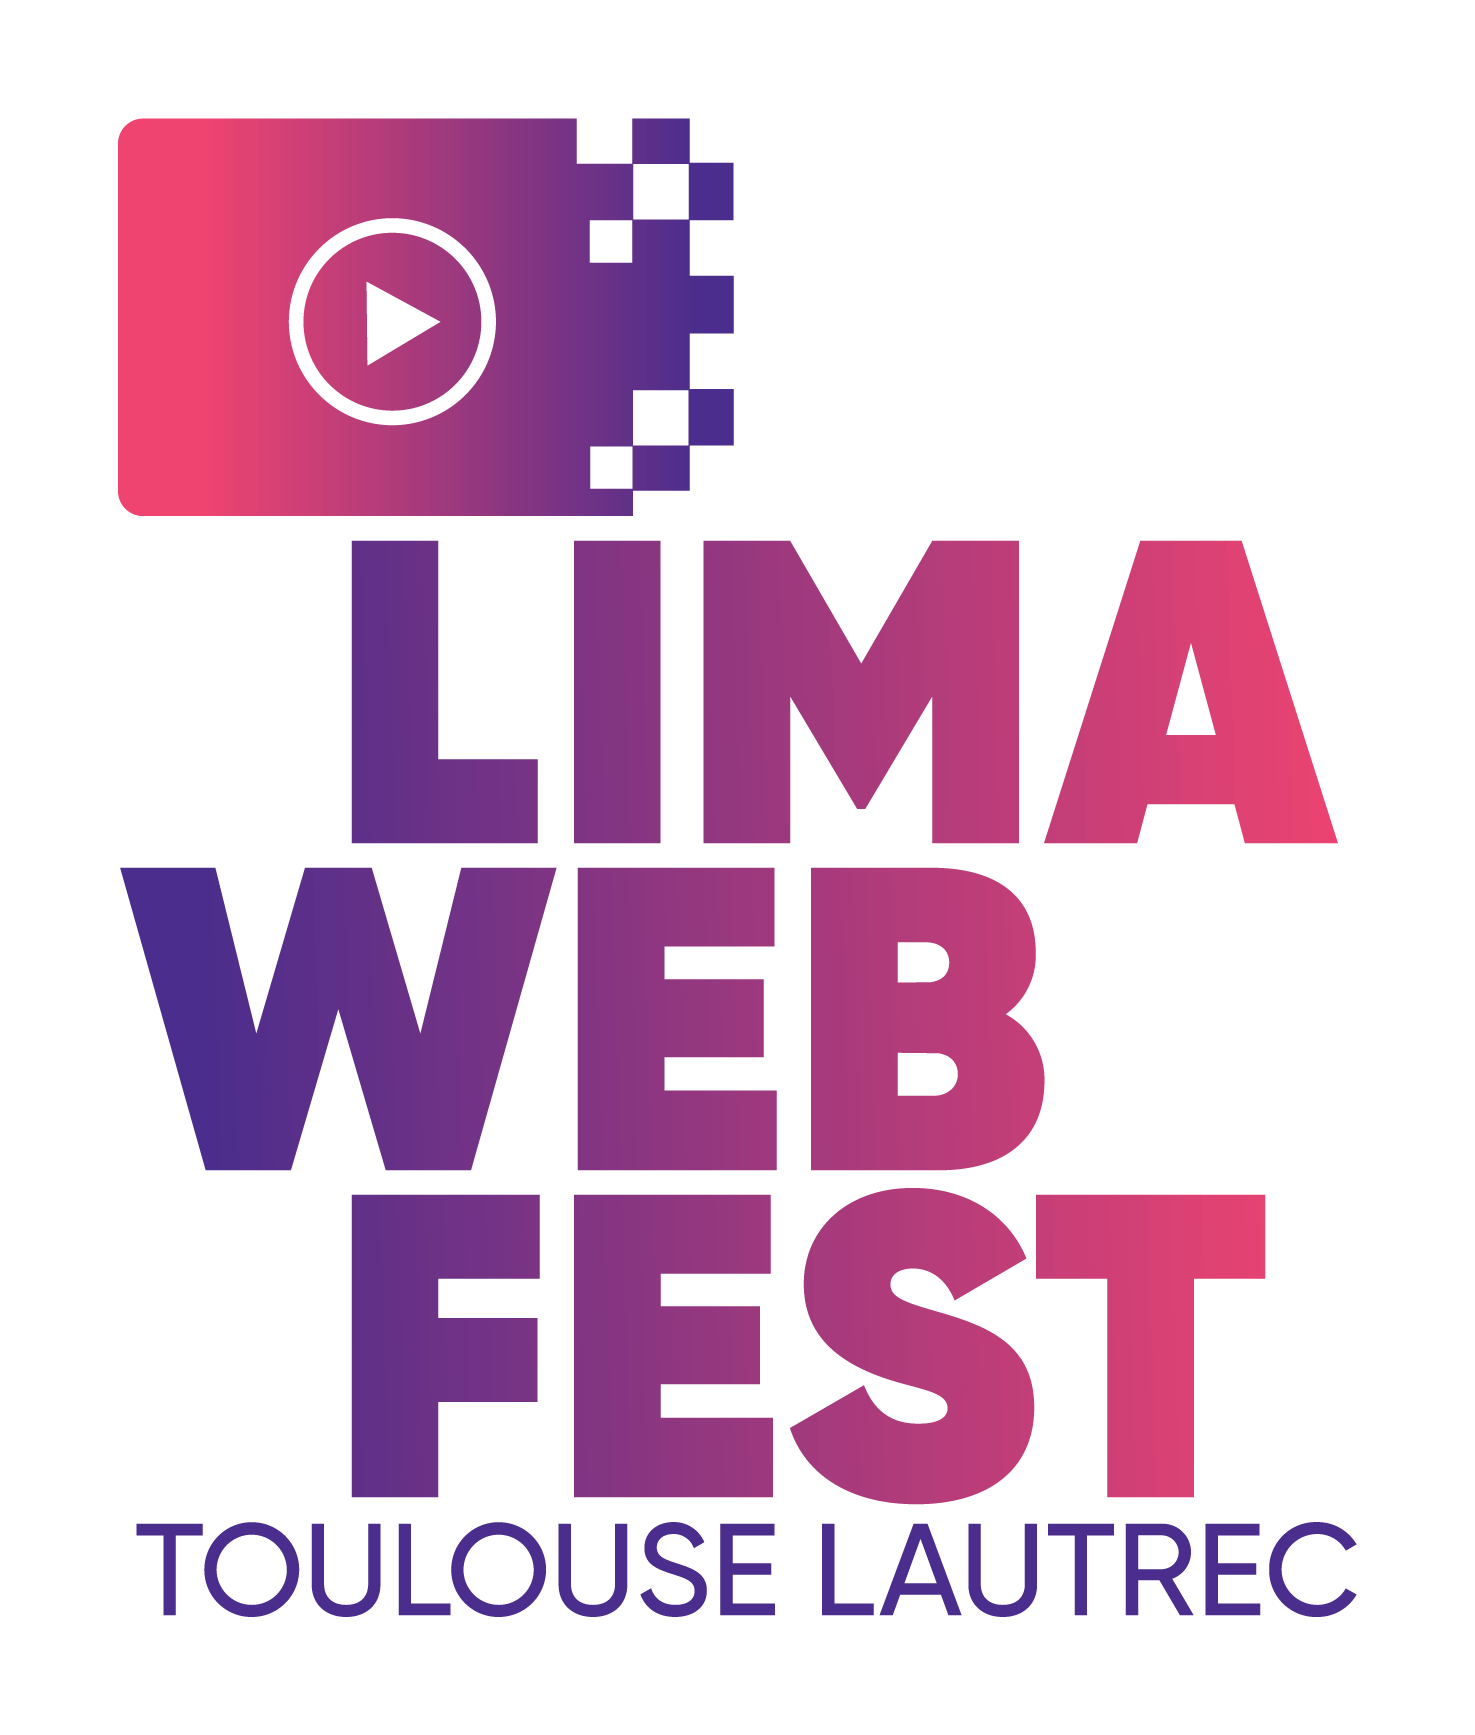 LIMA WEB FEST